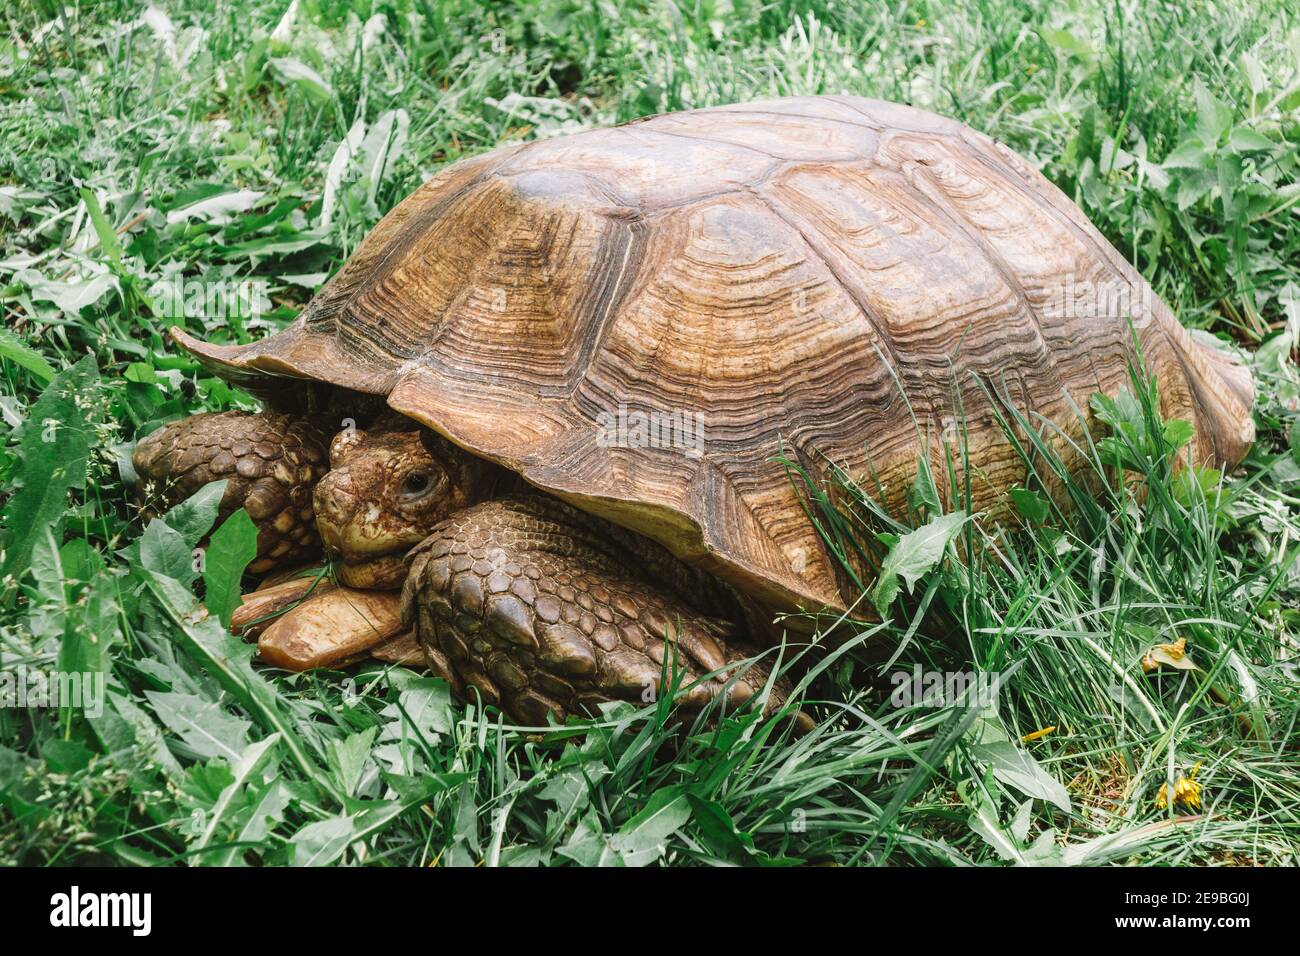 Tortue géante dans l'herbe verte. La tortue rampe lentement sur l'herbe et la mange. Gros plan. Banque D'Images